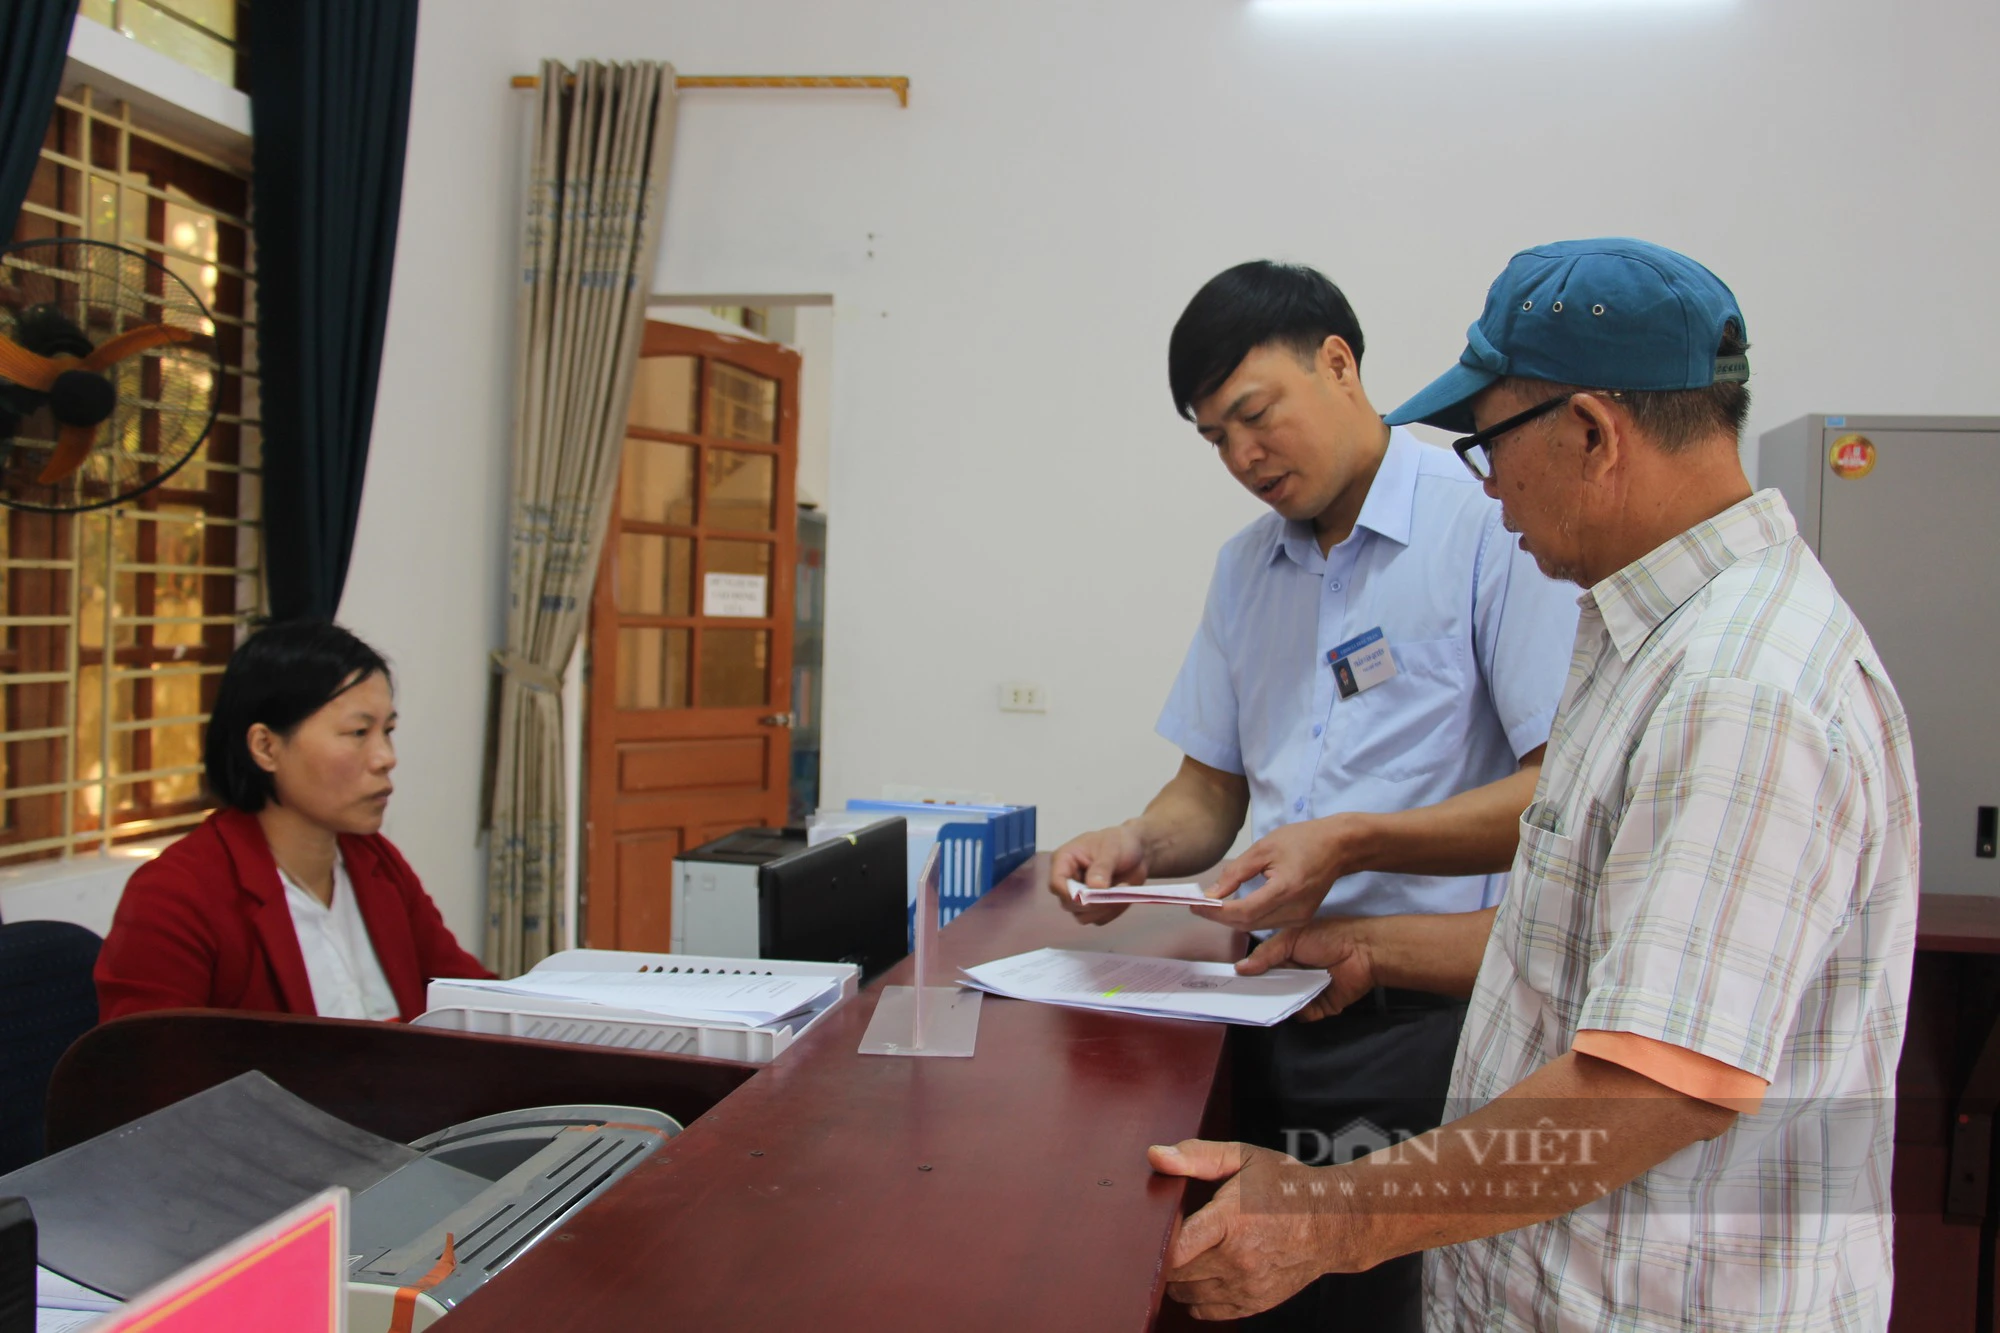 Chuyển đổi số ở Nam Định: Xã chuyển đổi số có wifi miễn phí căng đét, dân thoải mái truy cập (Bài 2) - Ảnh 2.